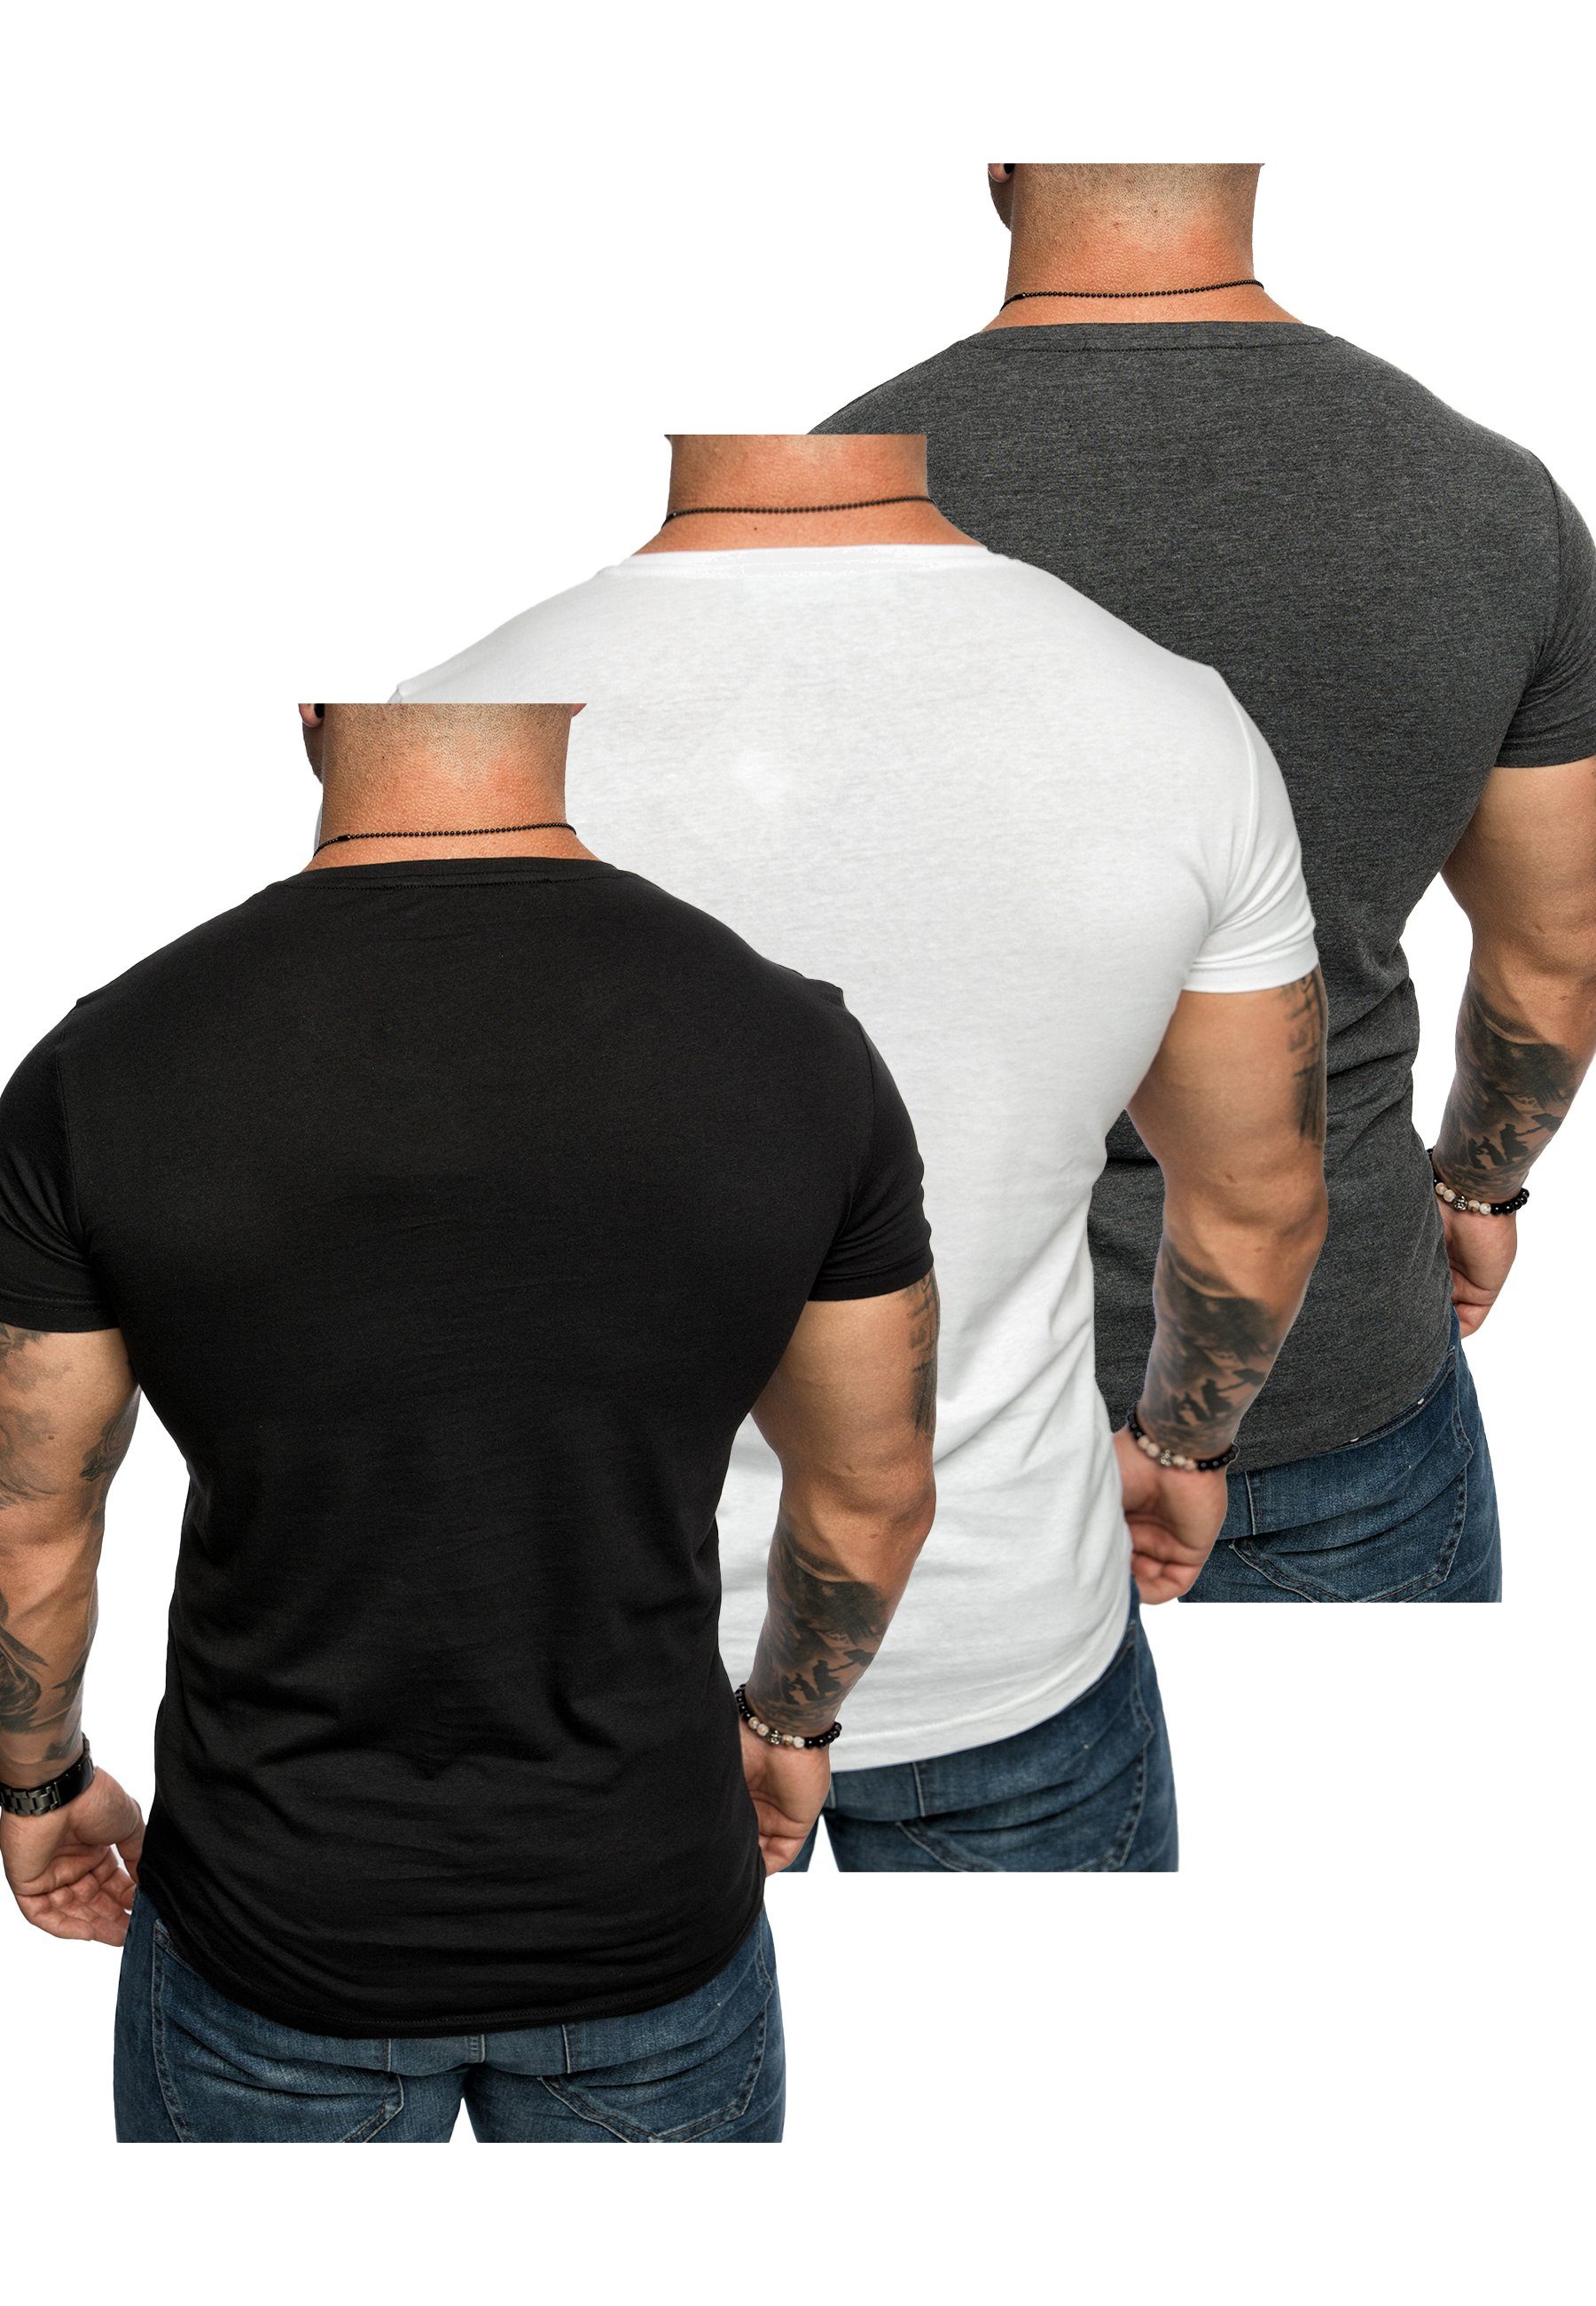 Basic 3er-Pack mit + Amaci&Sons T-Shirt Anthrazit) (Schwarz (3er-Pack) T-Shirts TACOMA T-Shirt Weiß + 3. Herren Oversize Rundhalsausschnitt